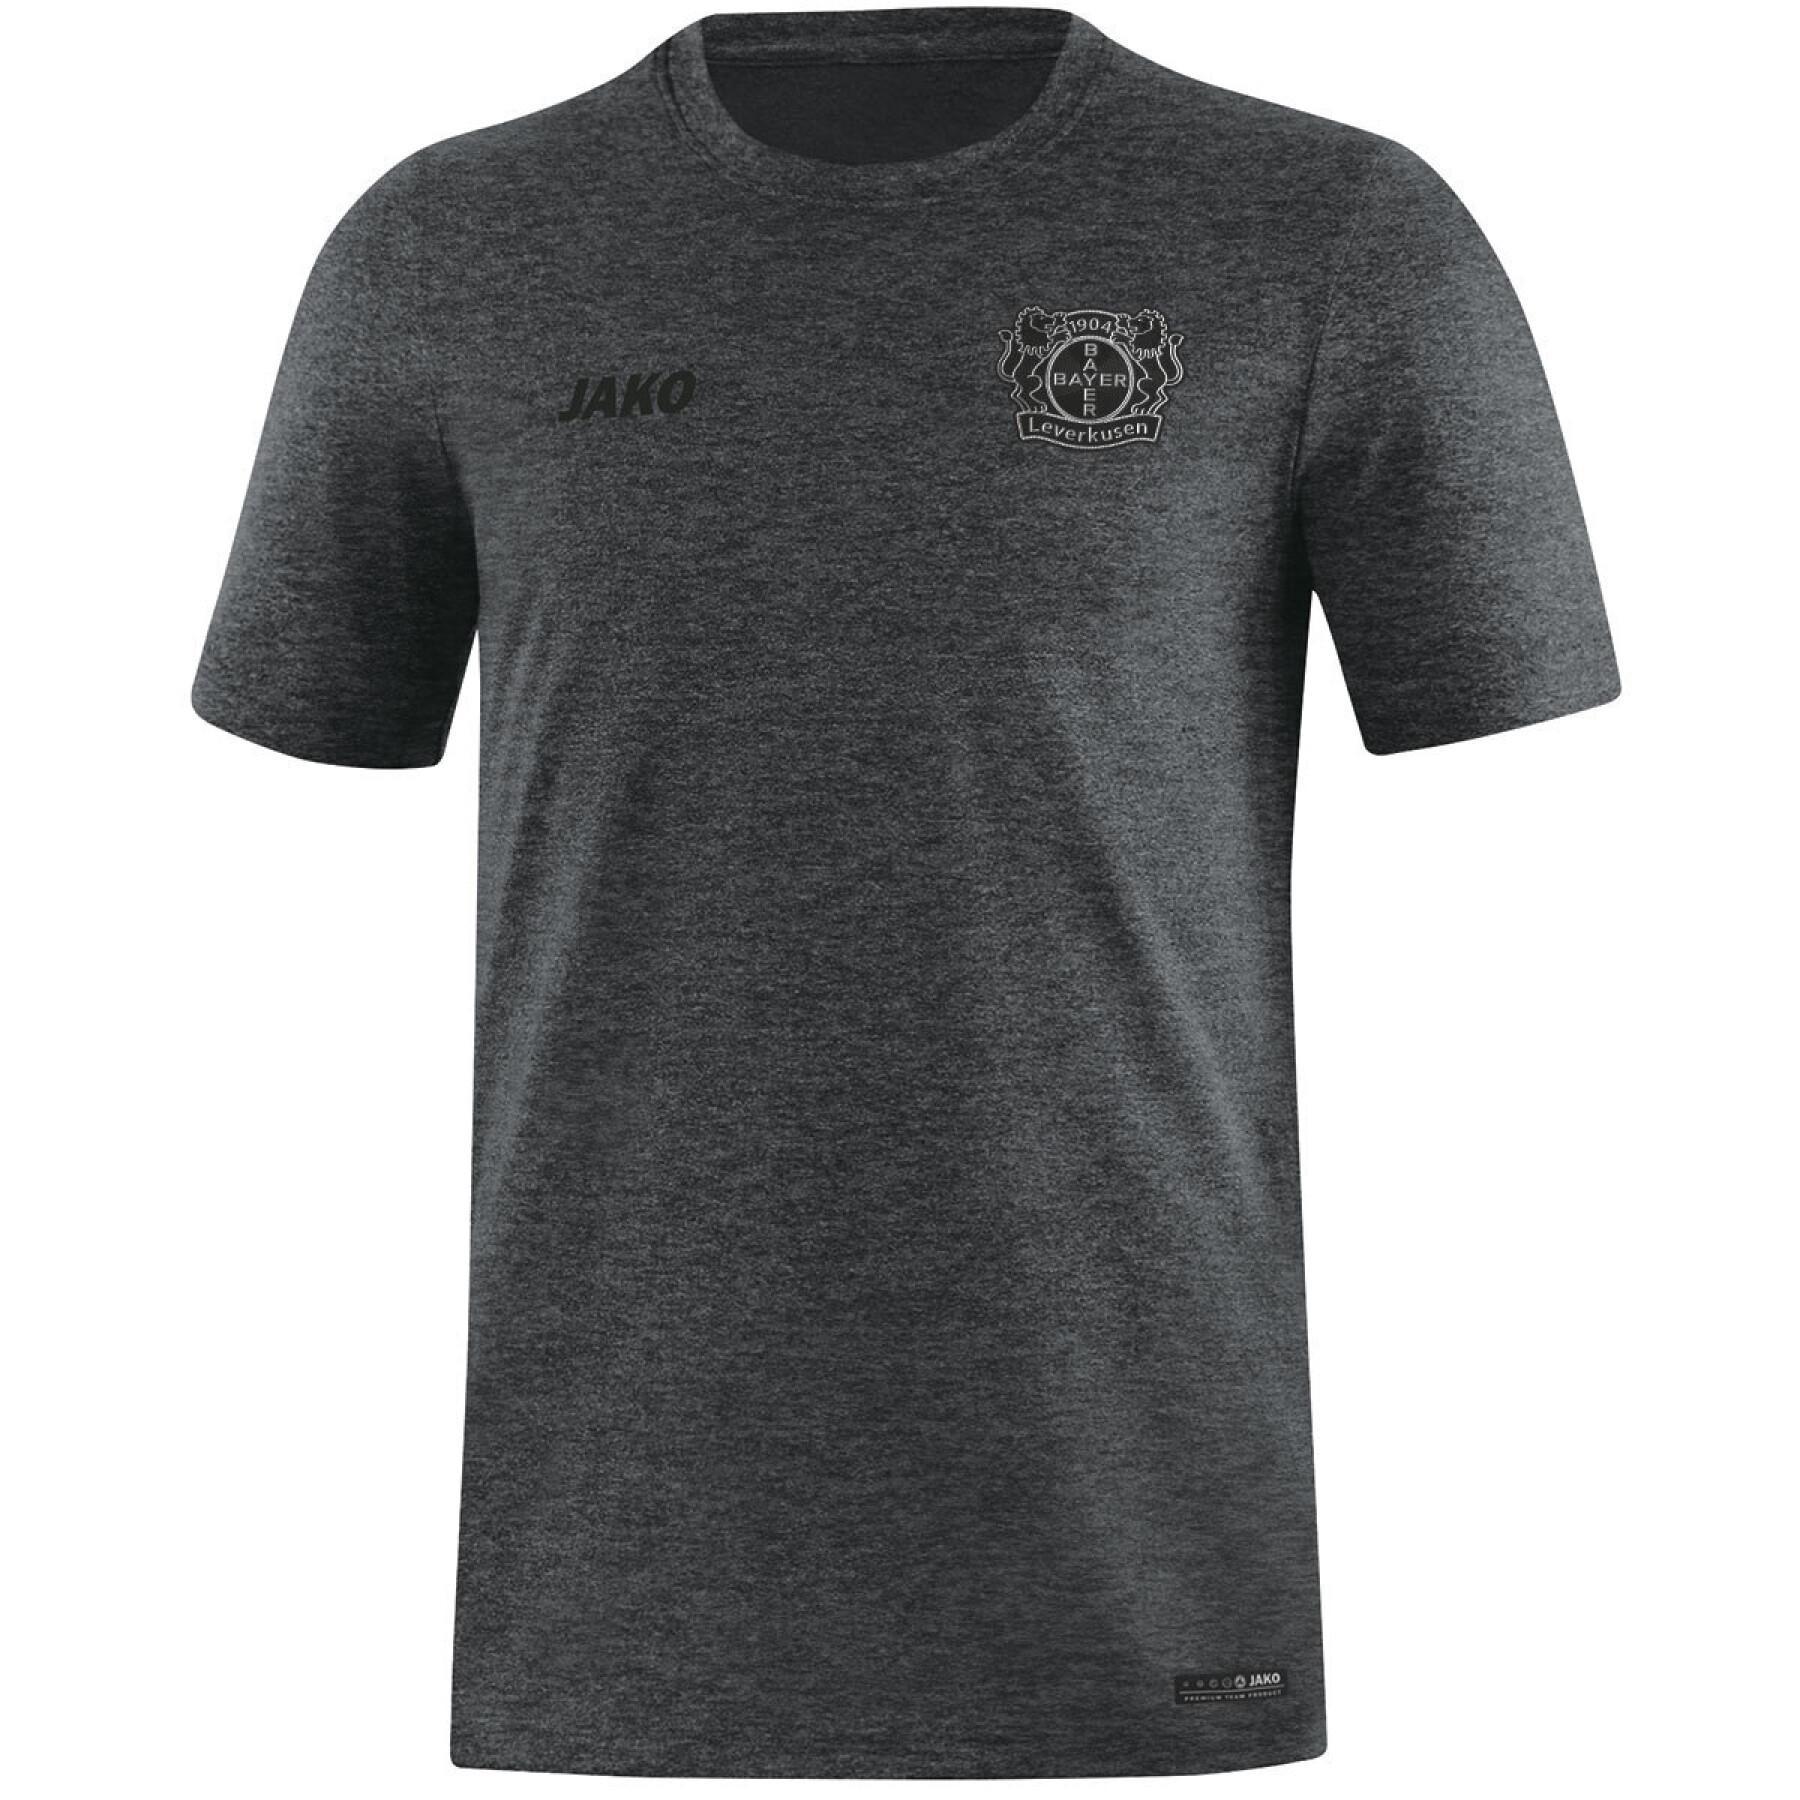 T-shirt för kvinnor Bayer Leverkusen Basics 2019/20